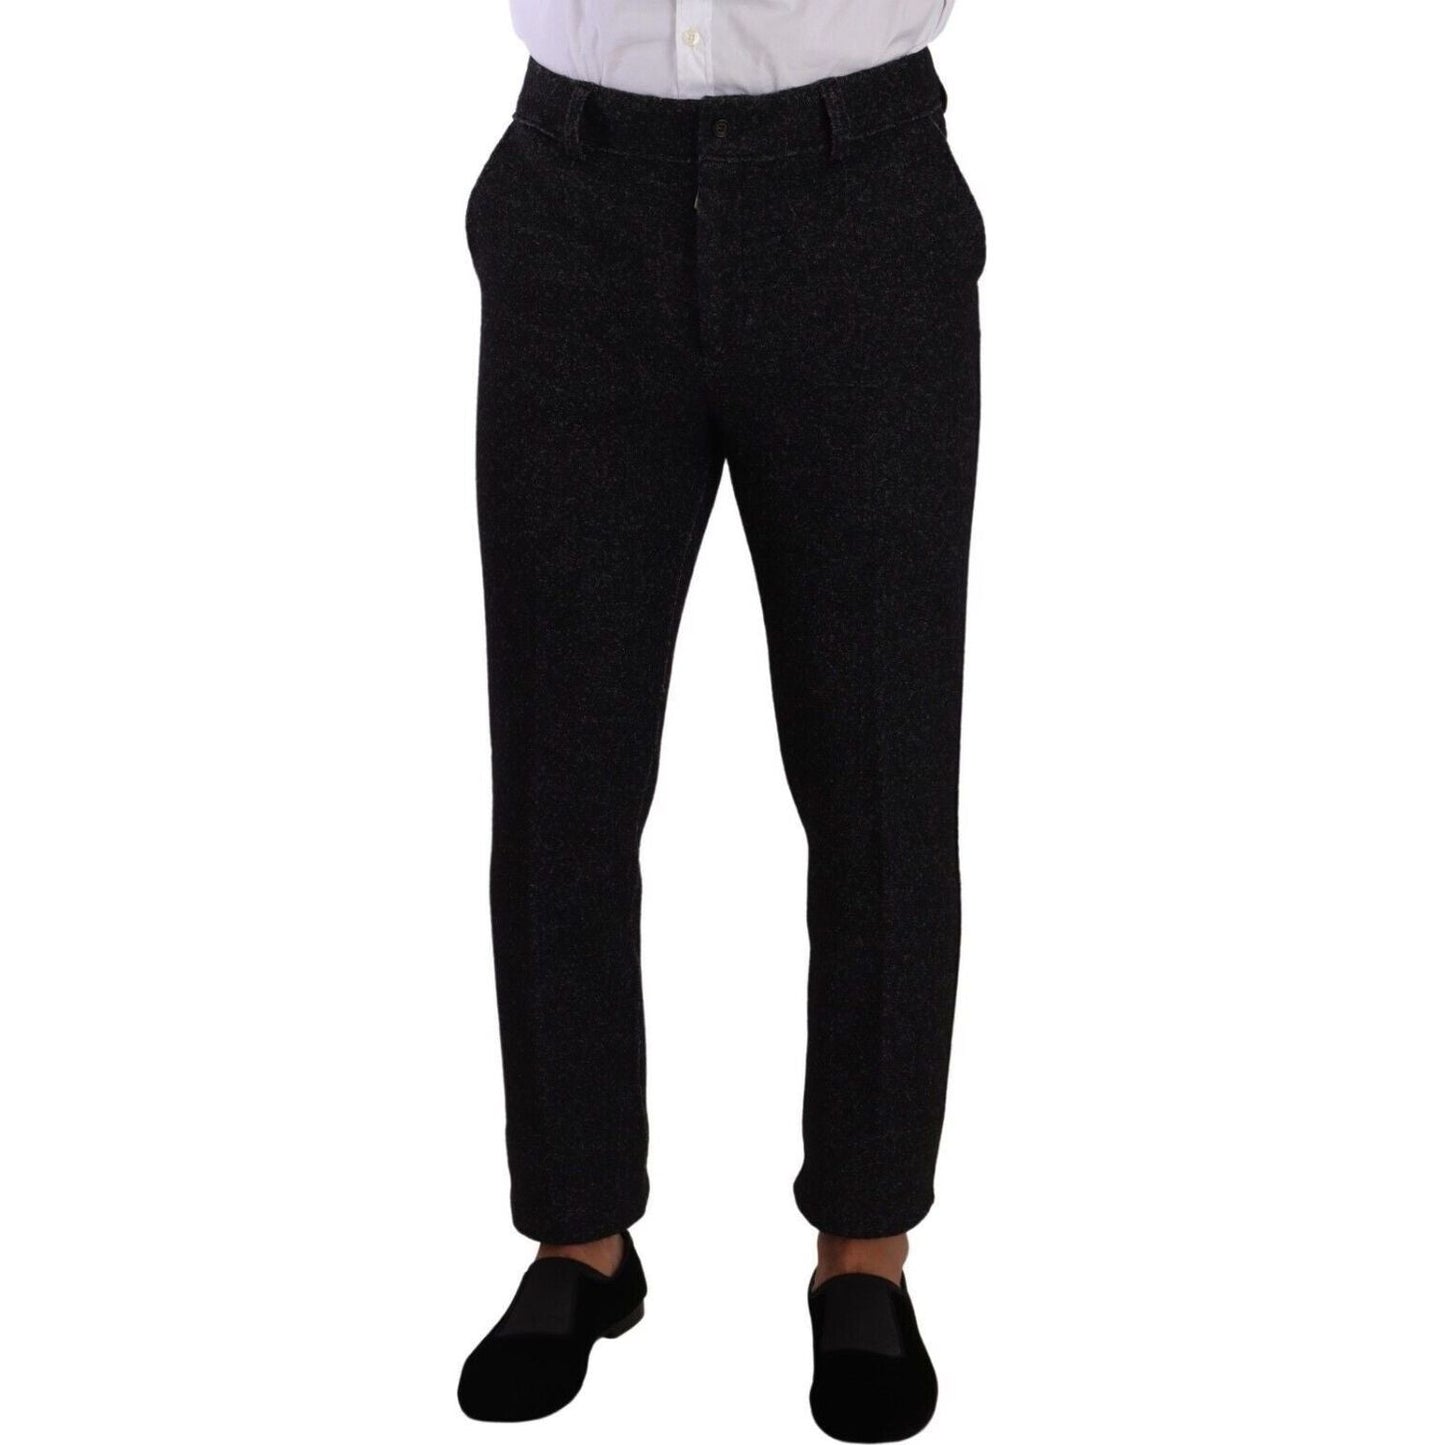 Dolce & Gabbana Elegant Wool Blend Dress Pants black-wool-men-formal-trouser-dress-pants